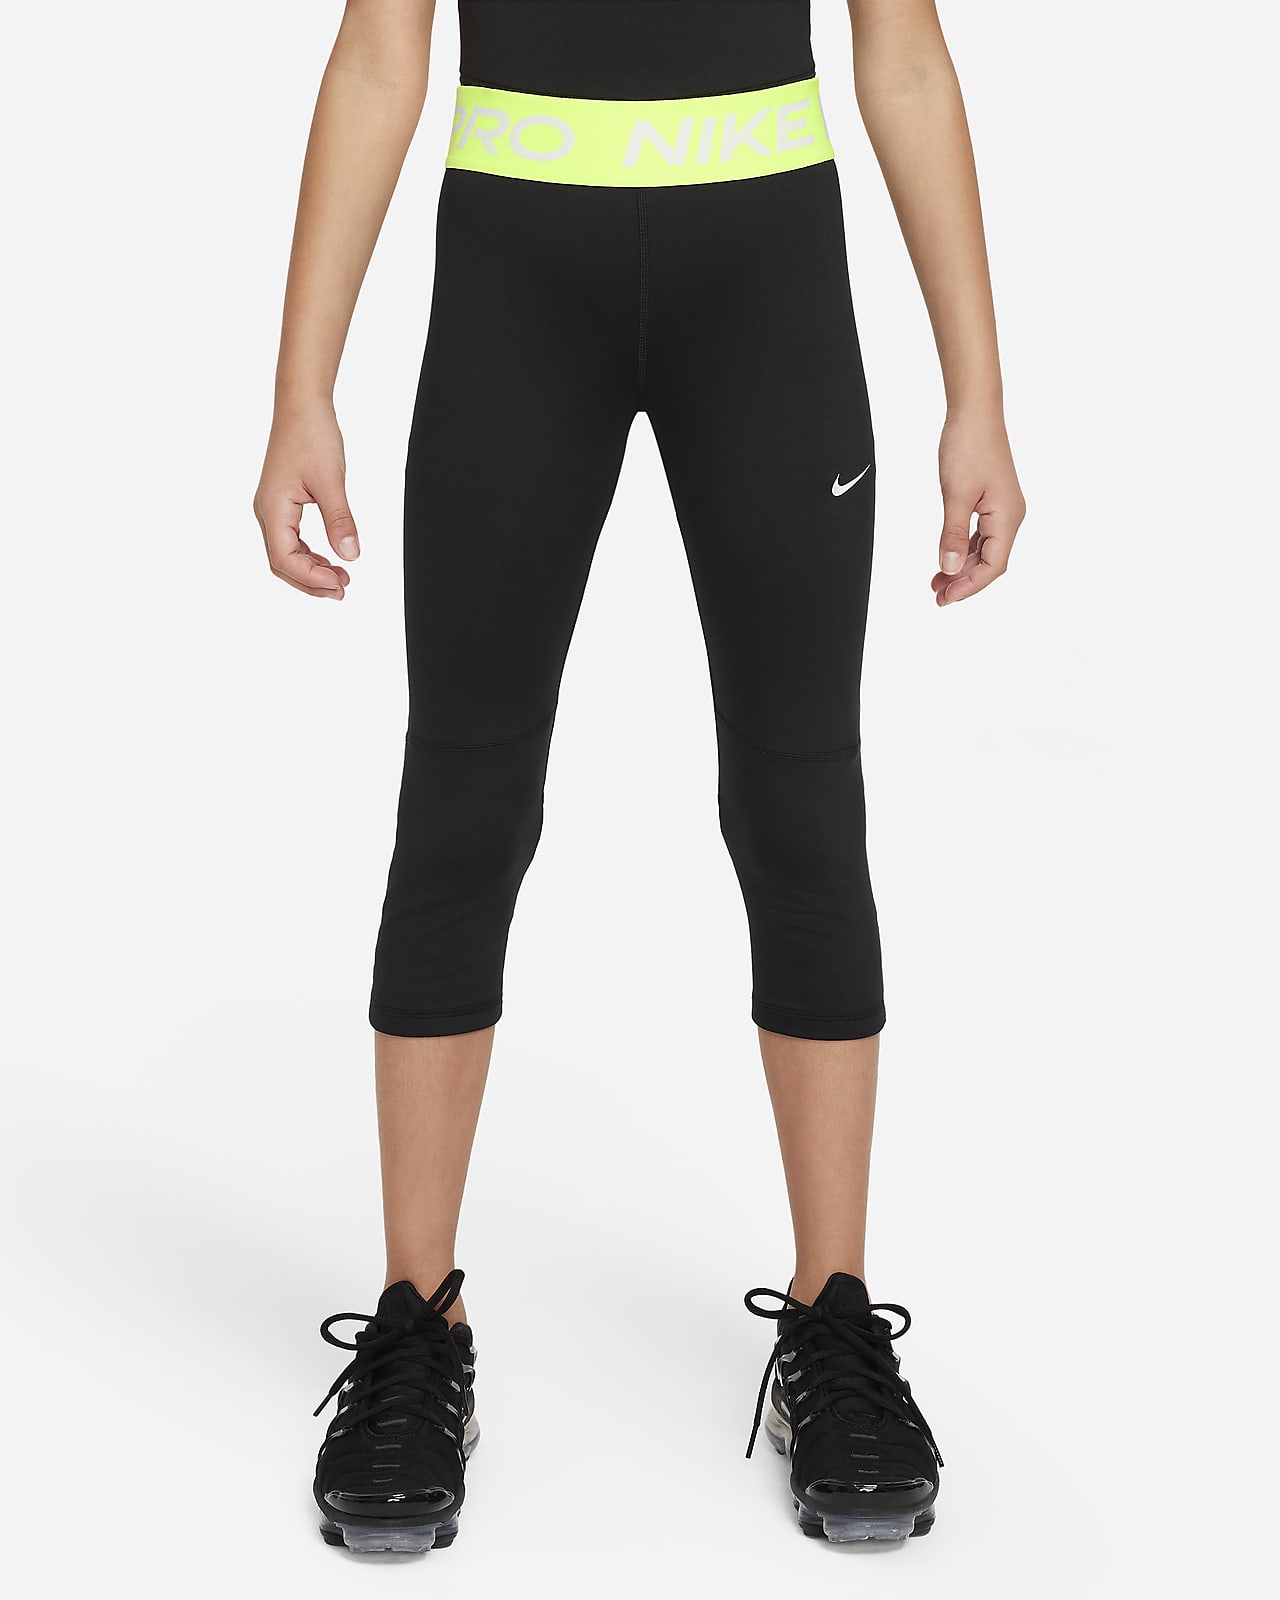 Nike Pro Capri - Women's 